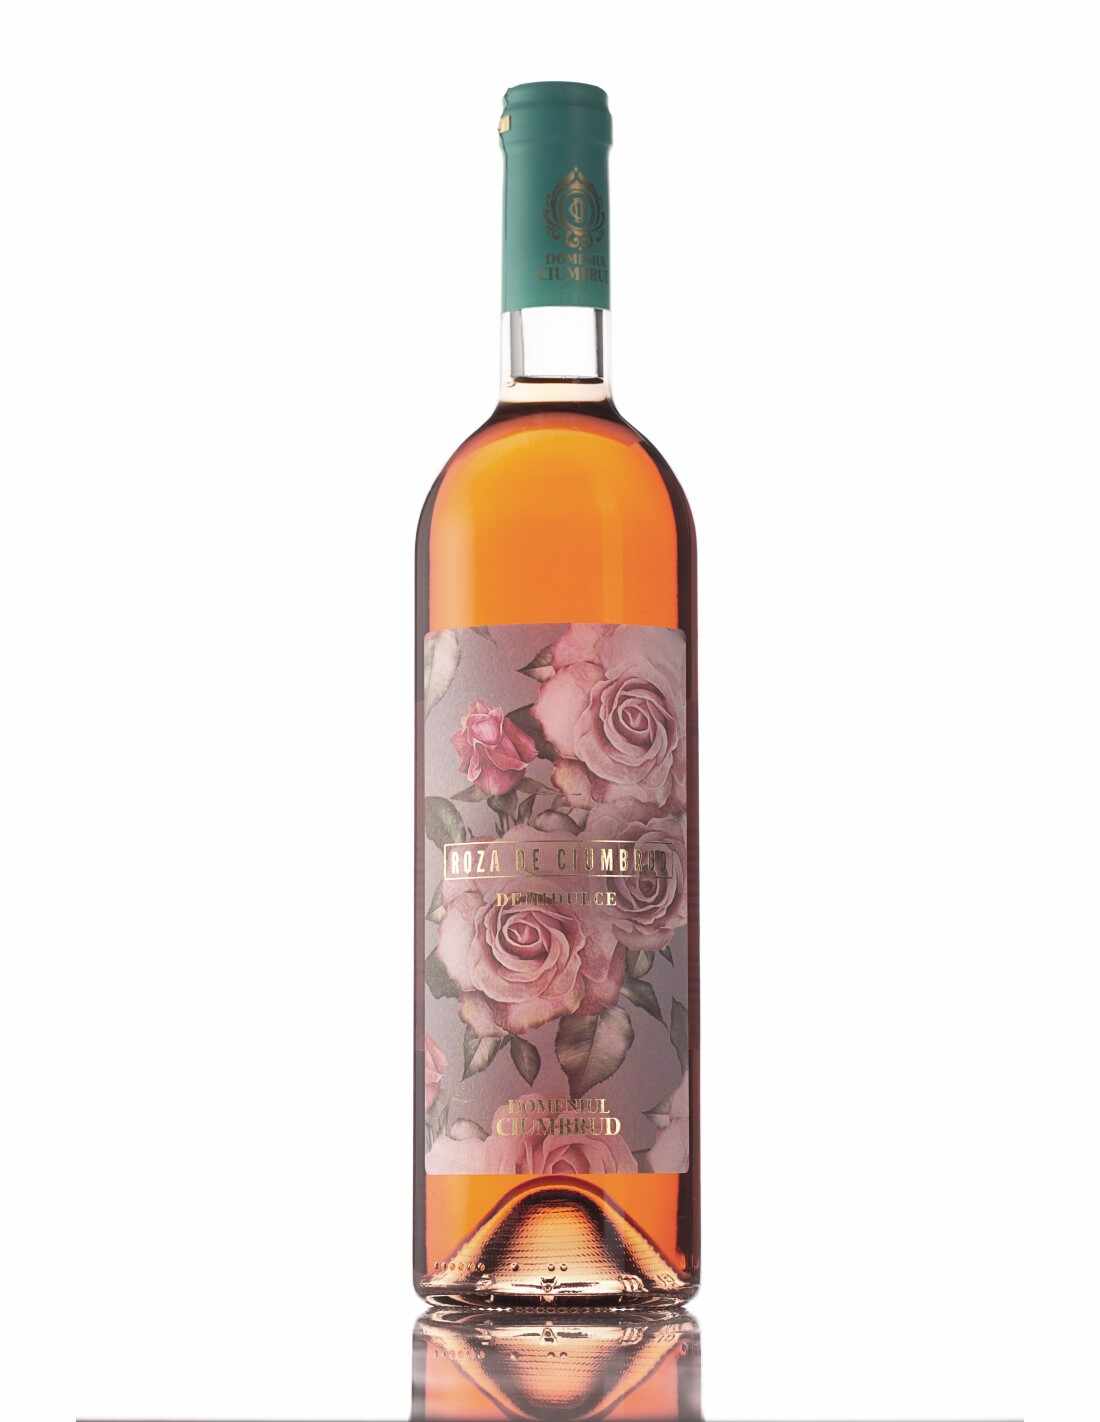 Vin rose demidulce, Feteasca Neagra & Pinot Noir, Roza de Ciumbrud, 12% alc., 0.75L, Romania